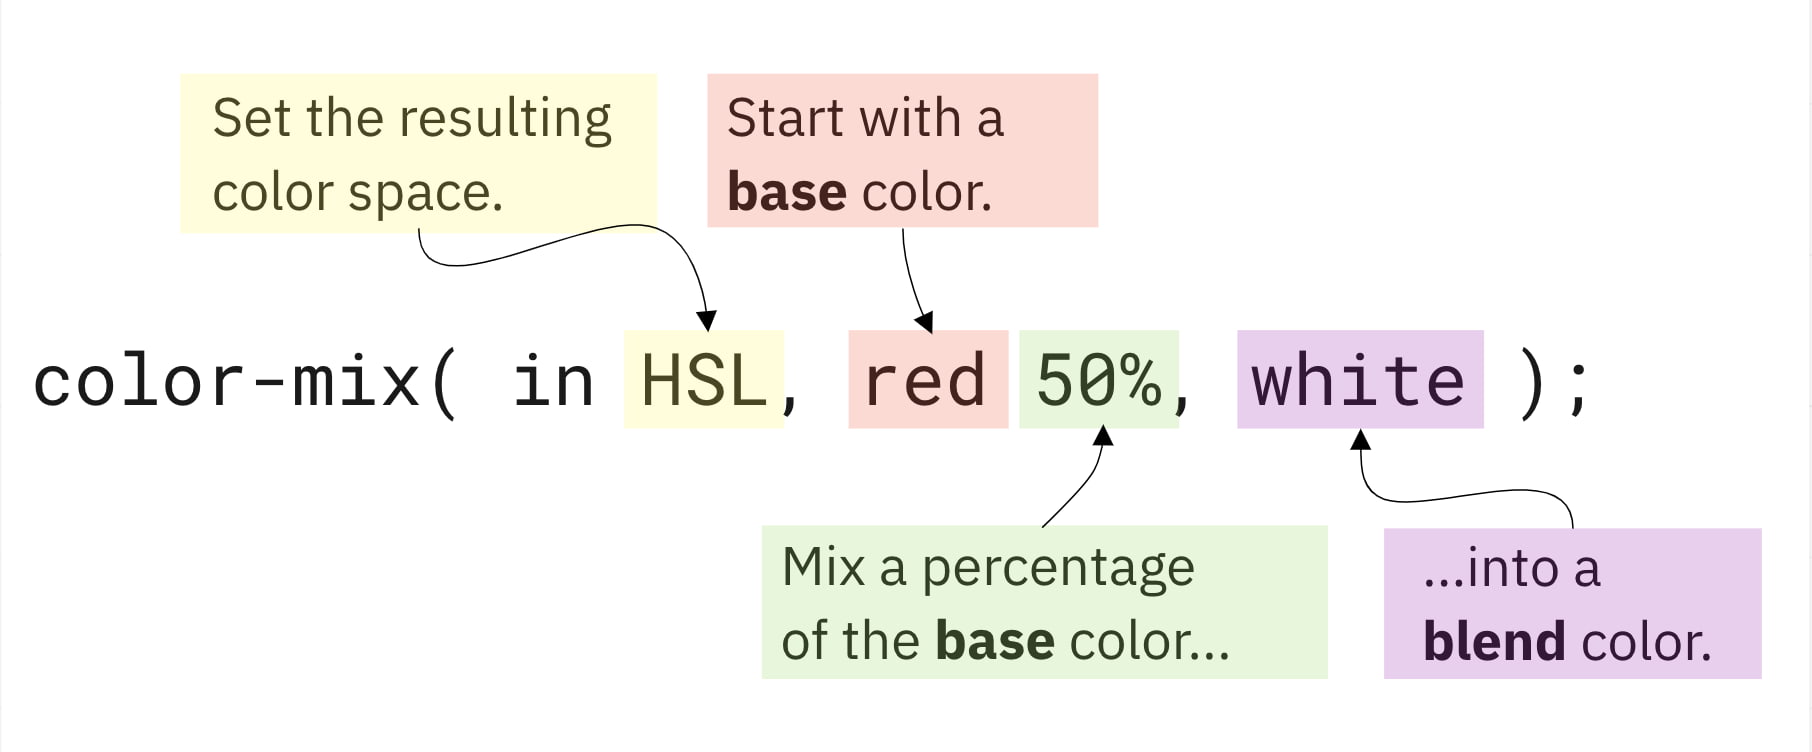 CSS Color-Mix(): Công cụ CSS Color-Mix() giúp bạn kết hợp hai hoặc nhiều màu sắc để tạo ra màu mới phù hợp với phong cách của bạn. Hãy tham khảo những hình ảnh liên quan để tìm hiểu thêm về cách sử dụng và ứng dụng của CSS Color-Mix().